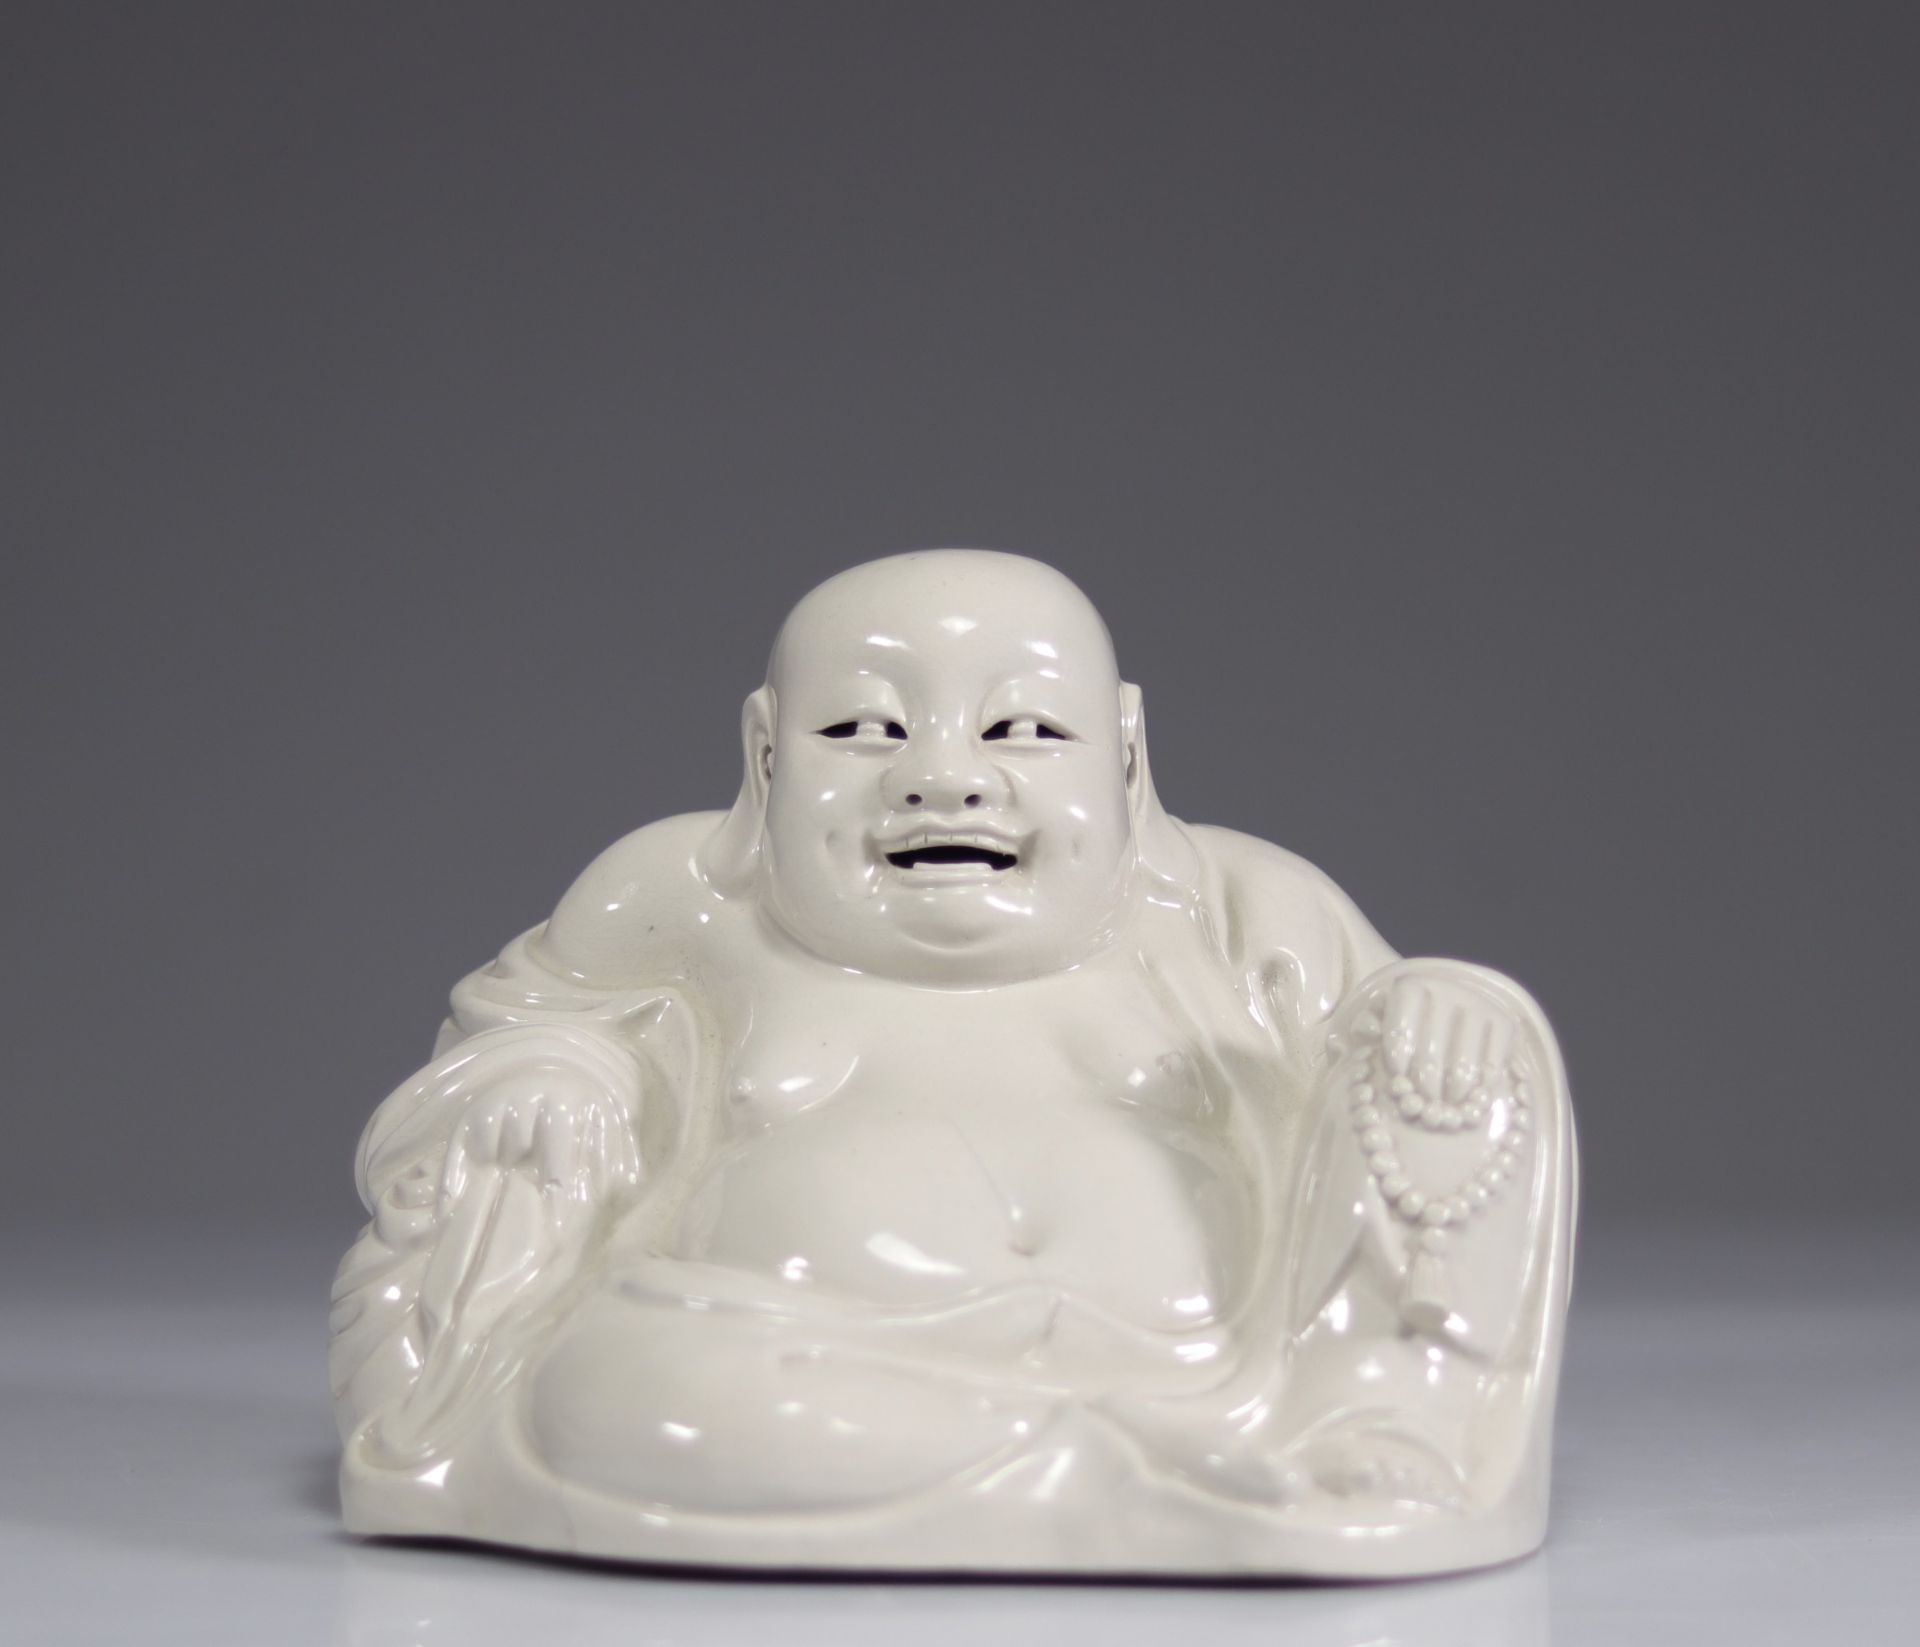 Dehua China White Buddha